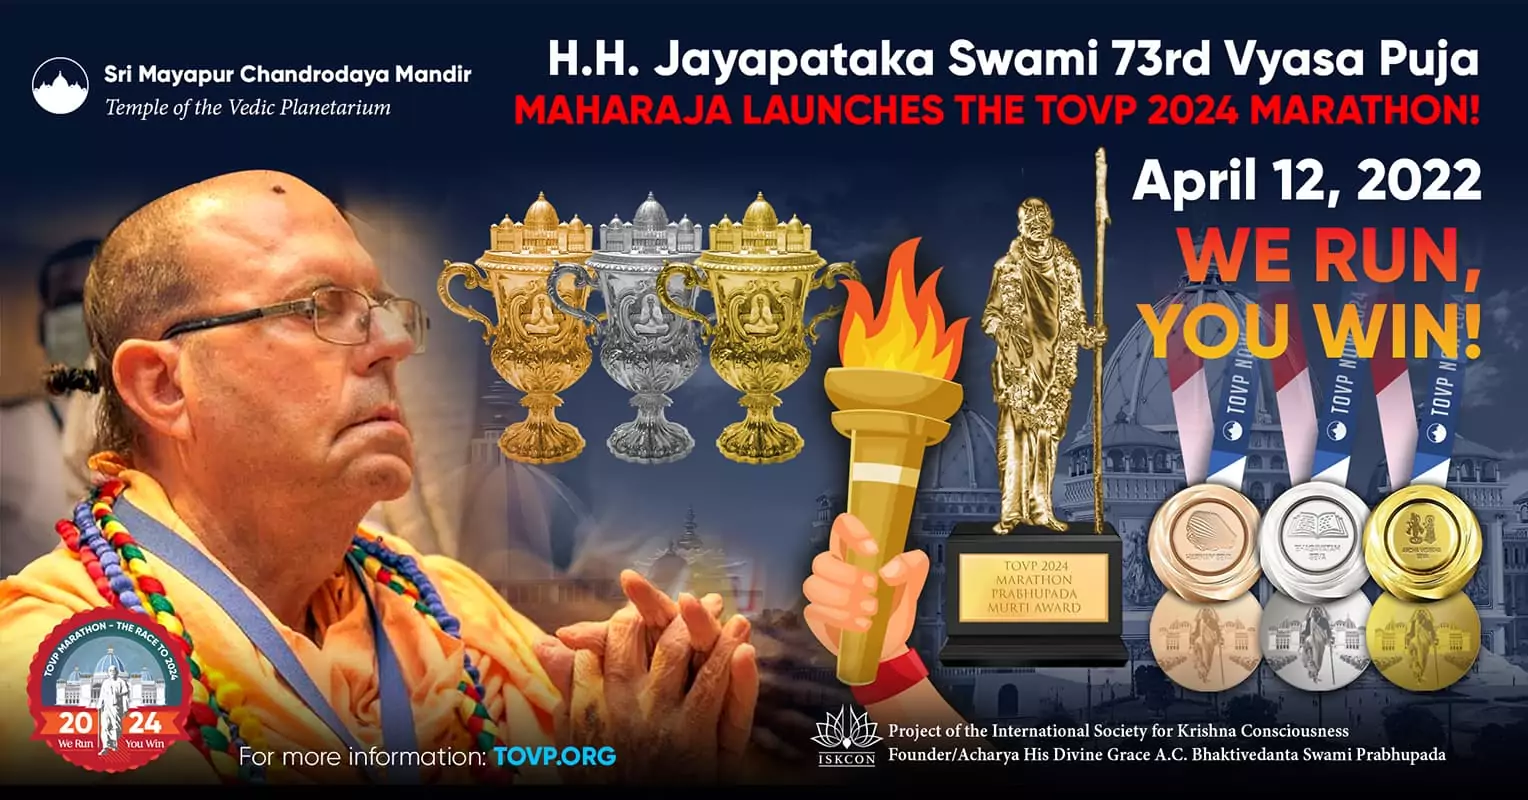 SS Jayapataka Swami señala el lanzamiento oficial del maratón TOVP 2024 en su celebración número 73 de Vyasa Puja